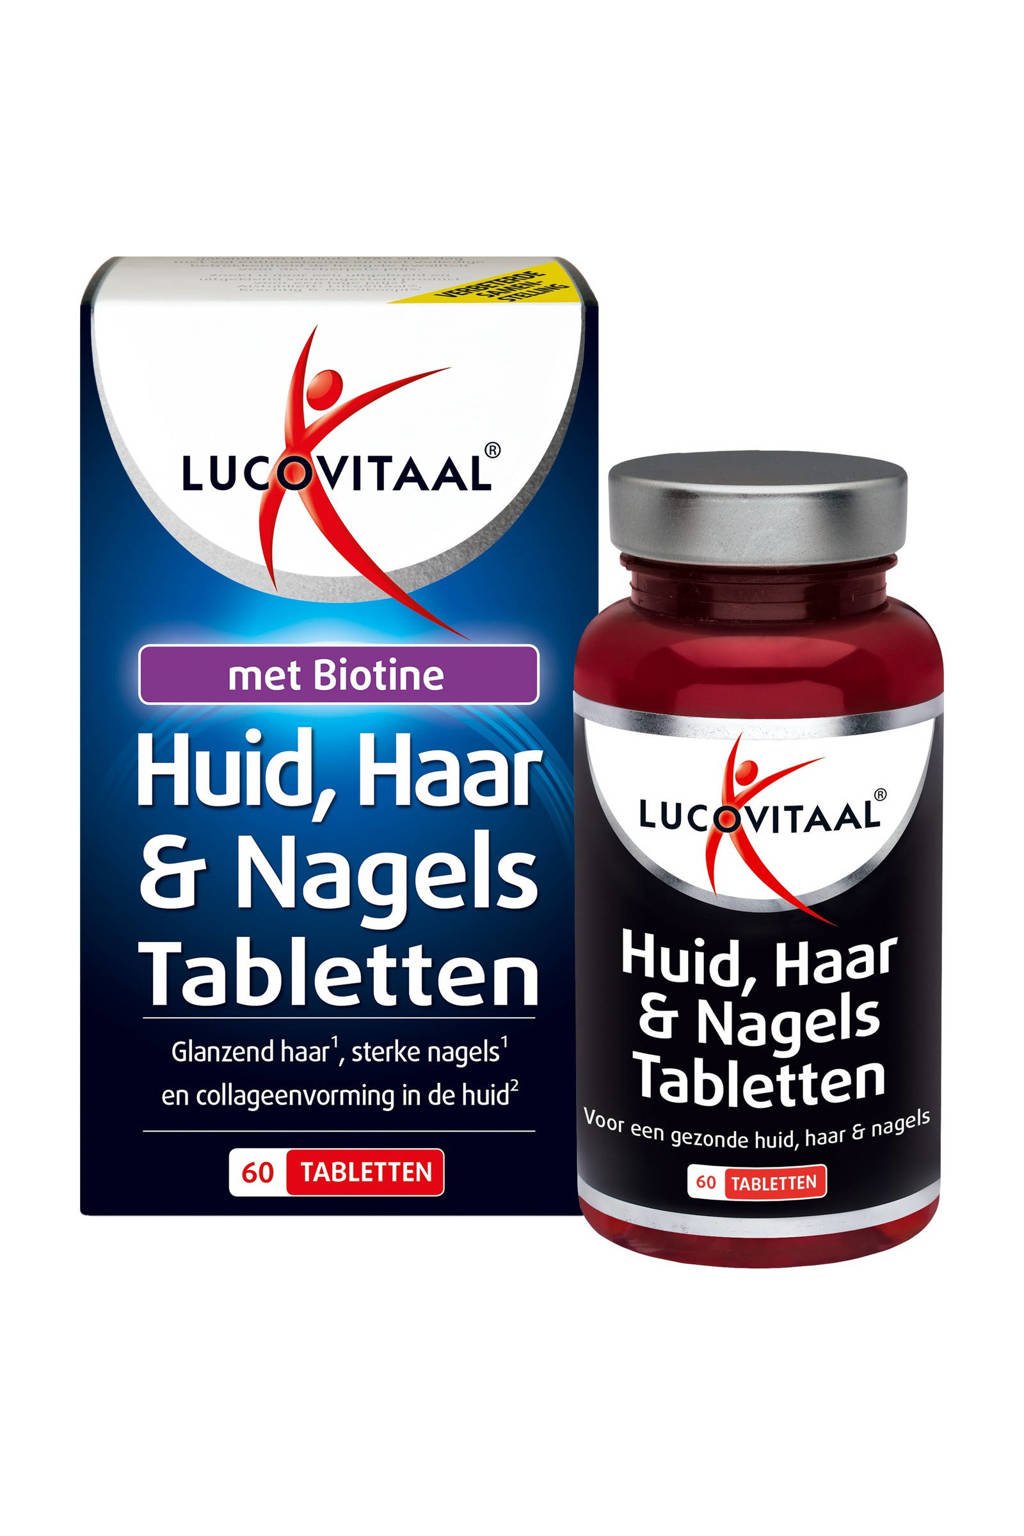 Deuk Zes Krankzinnigheid Lucovitaal Huid, Haar & Nagels Tabletten - 60 tabletten | wehkamp